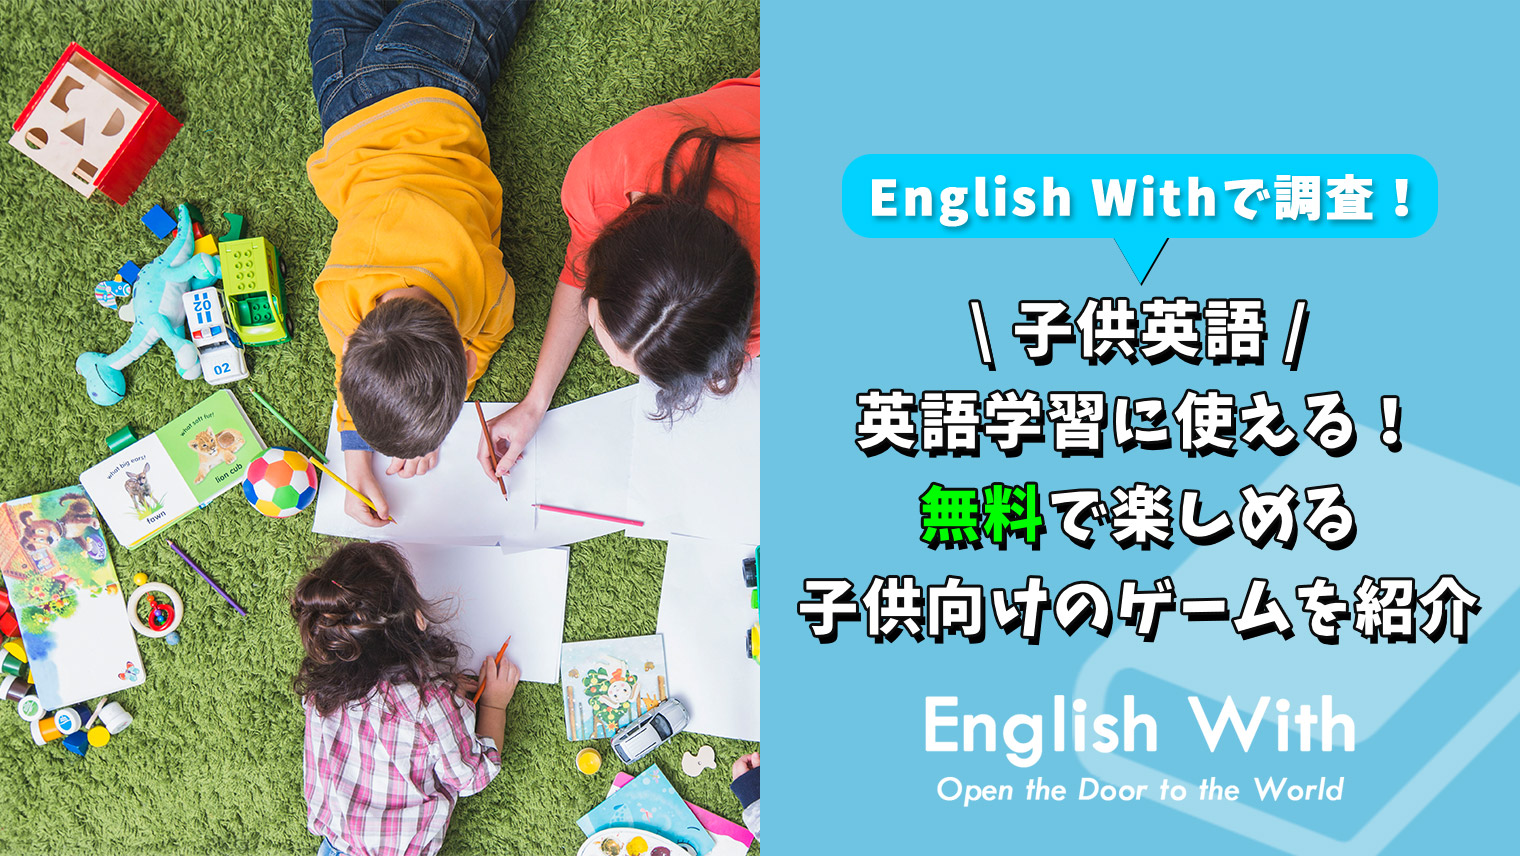 英語学習に使える 無料で楽しめる子供向けのゲームを紹介 特徴別 おすすめ英会話 英語学習の比較 ランキング English With